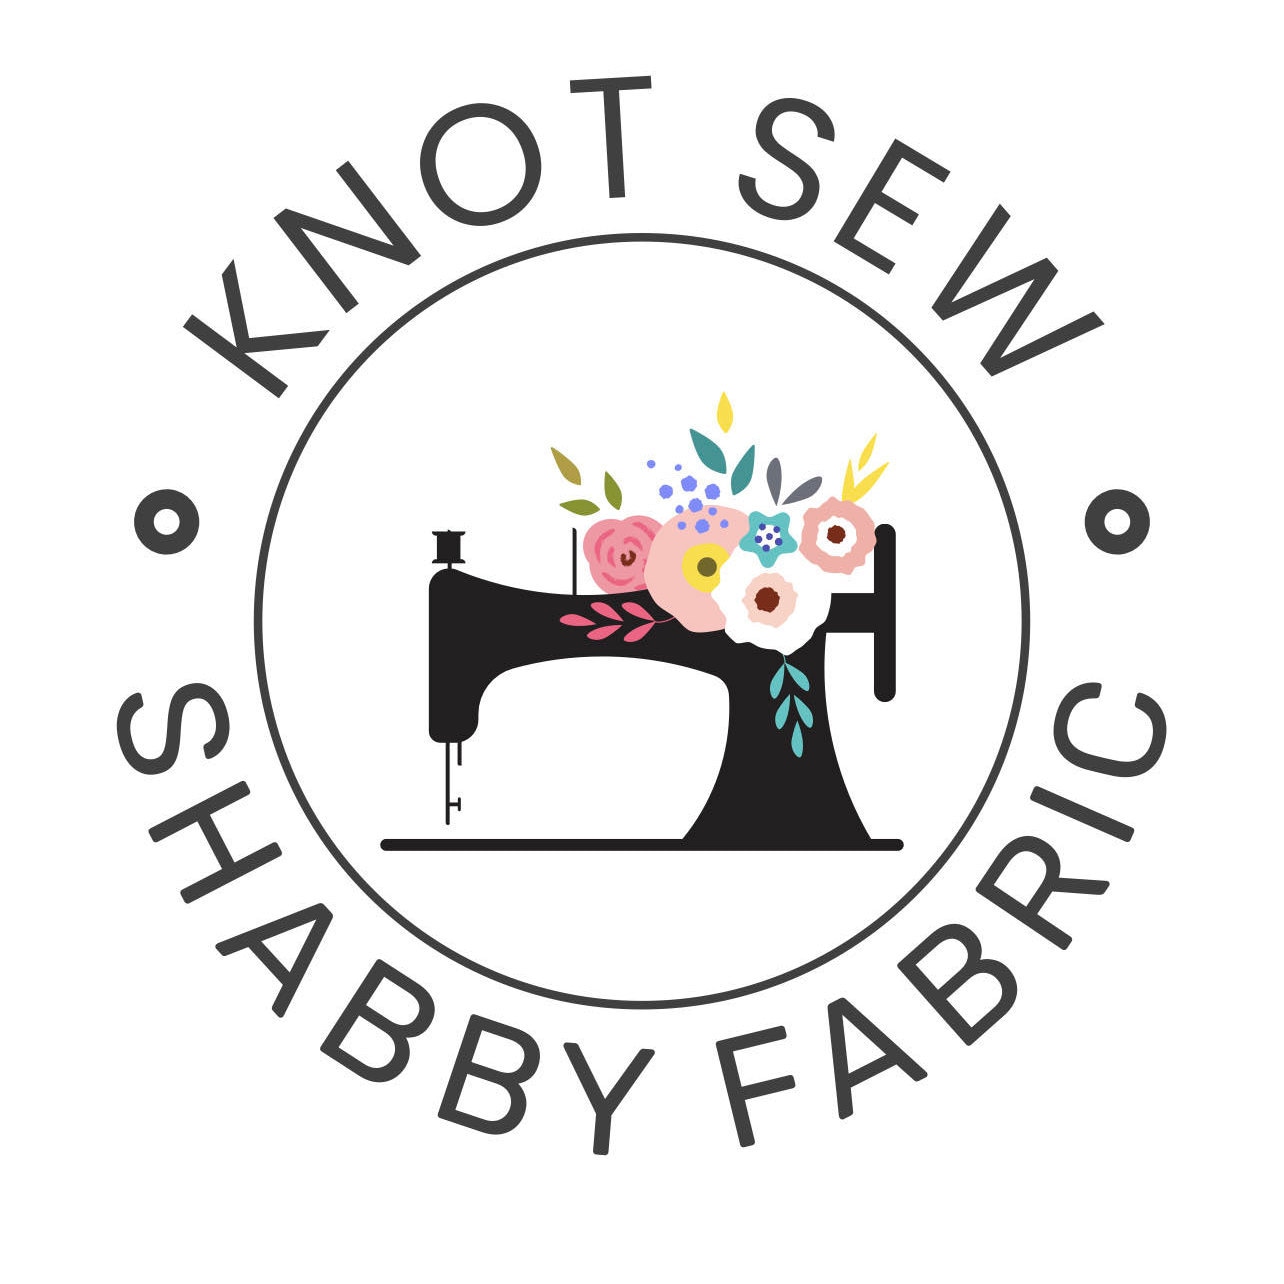 Knotsewshabbyfabric - Etsy